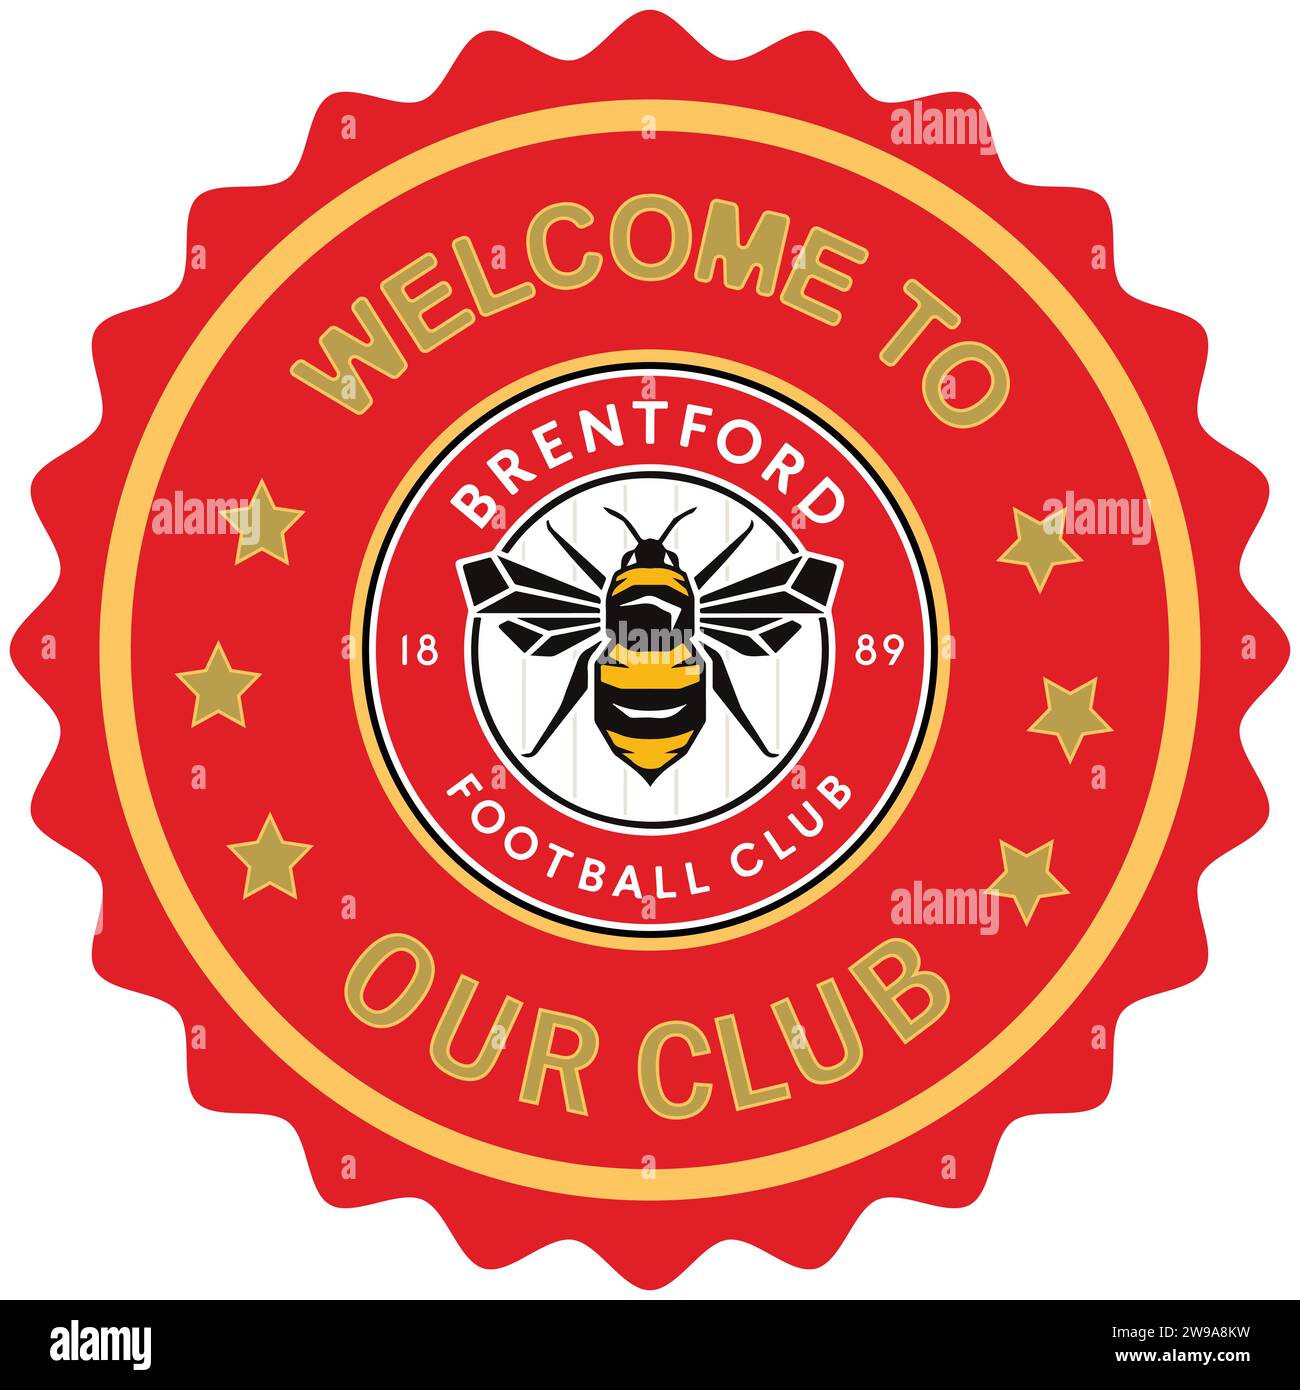 Benvenuti al Brentford FC, il nostro club di calcio professionistico inglese Vector Illustration Abstract Editable image Illustrazione Vettoriale